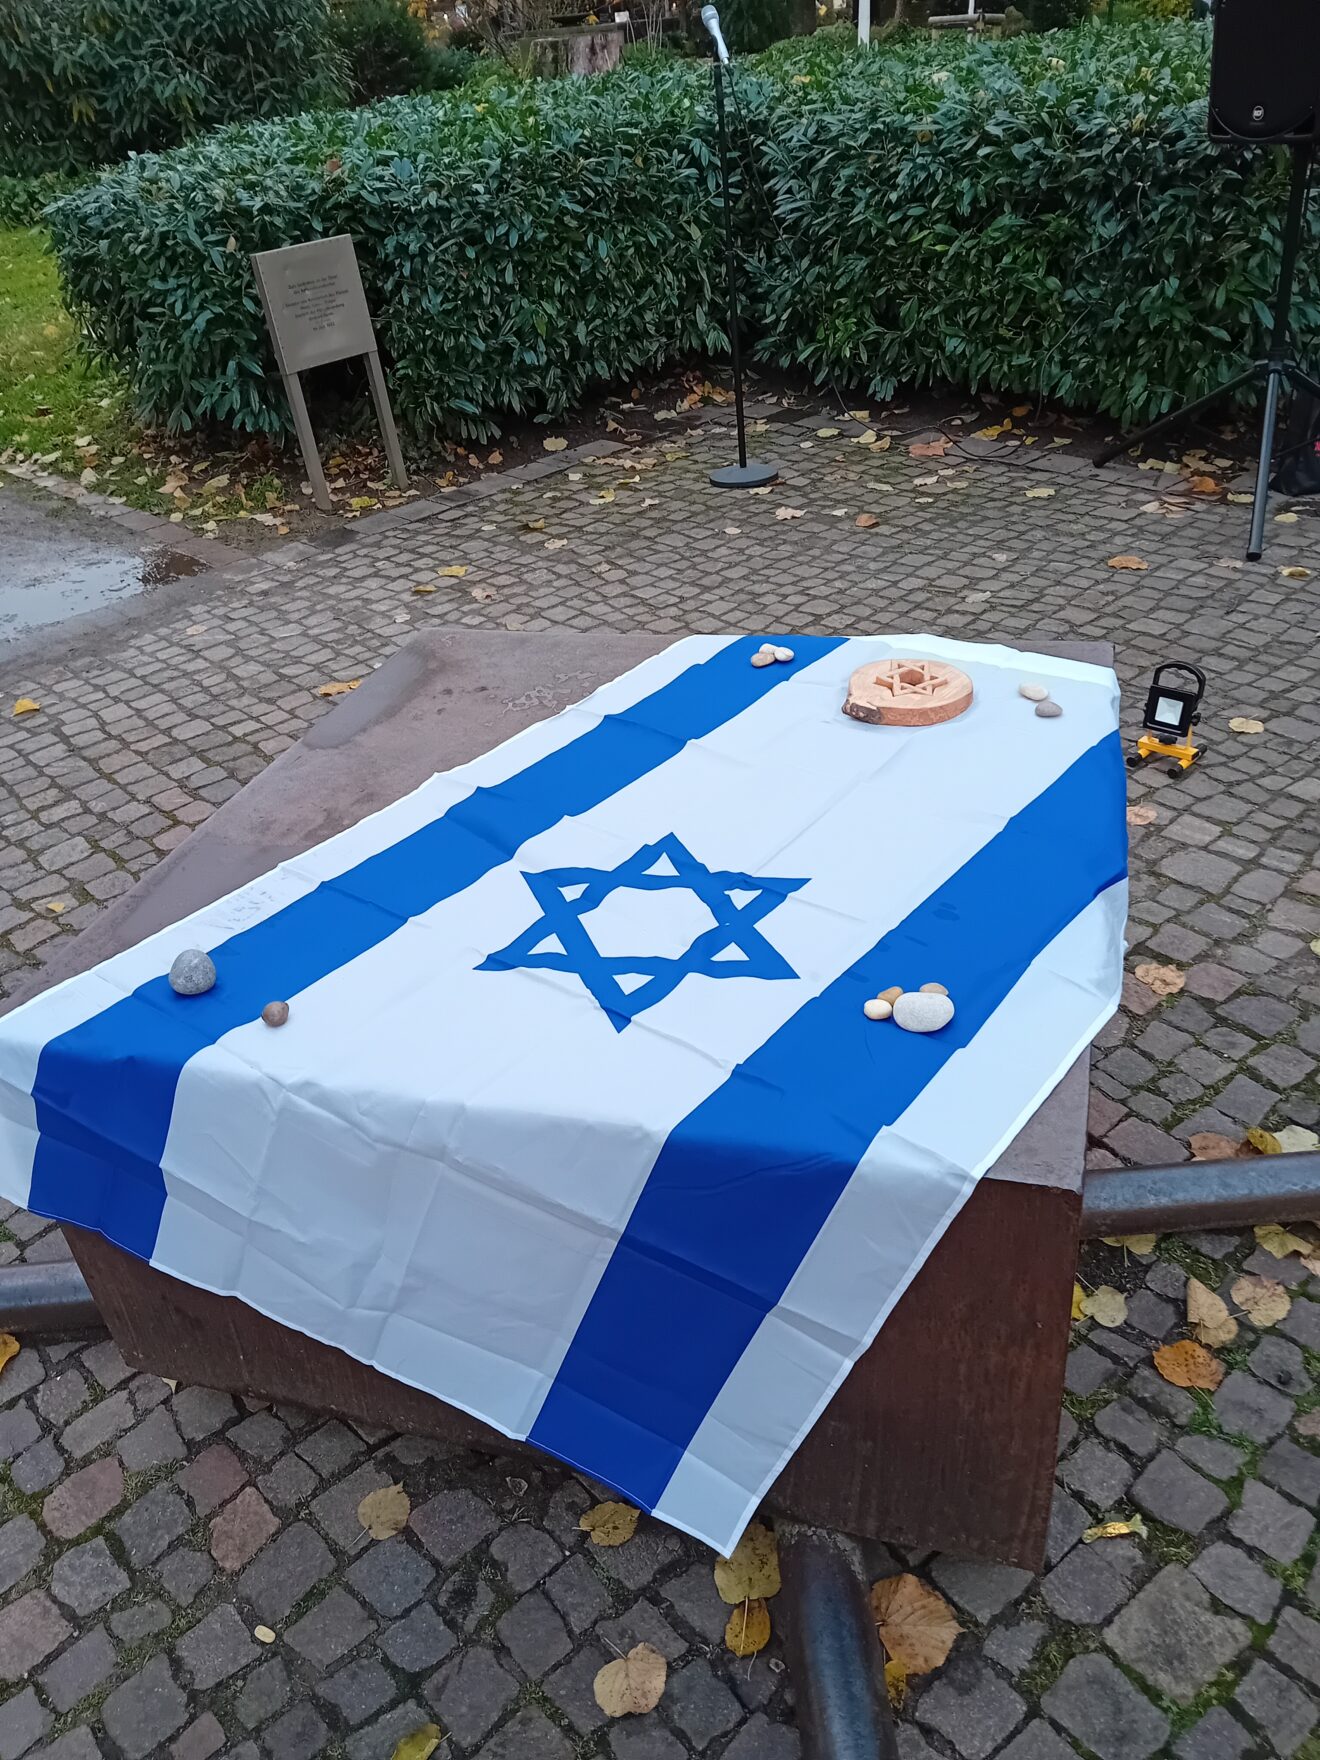 Wir gedenken der Leiden der Juden und dürfen heute Freunde werden